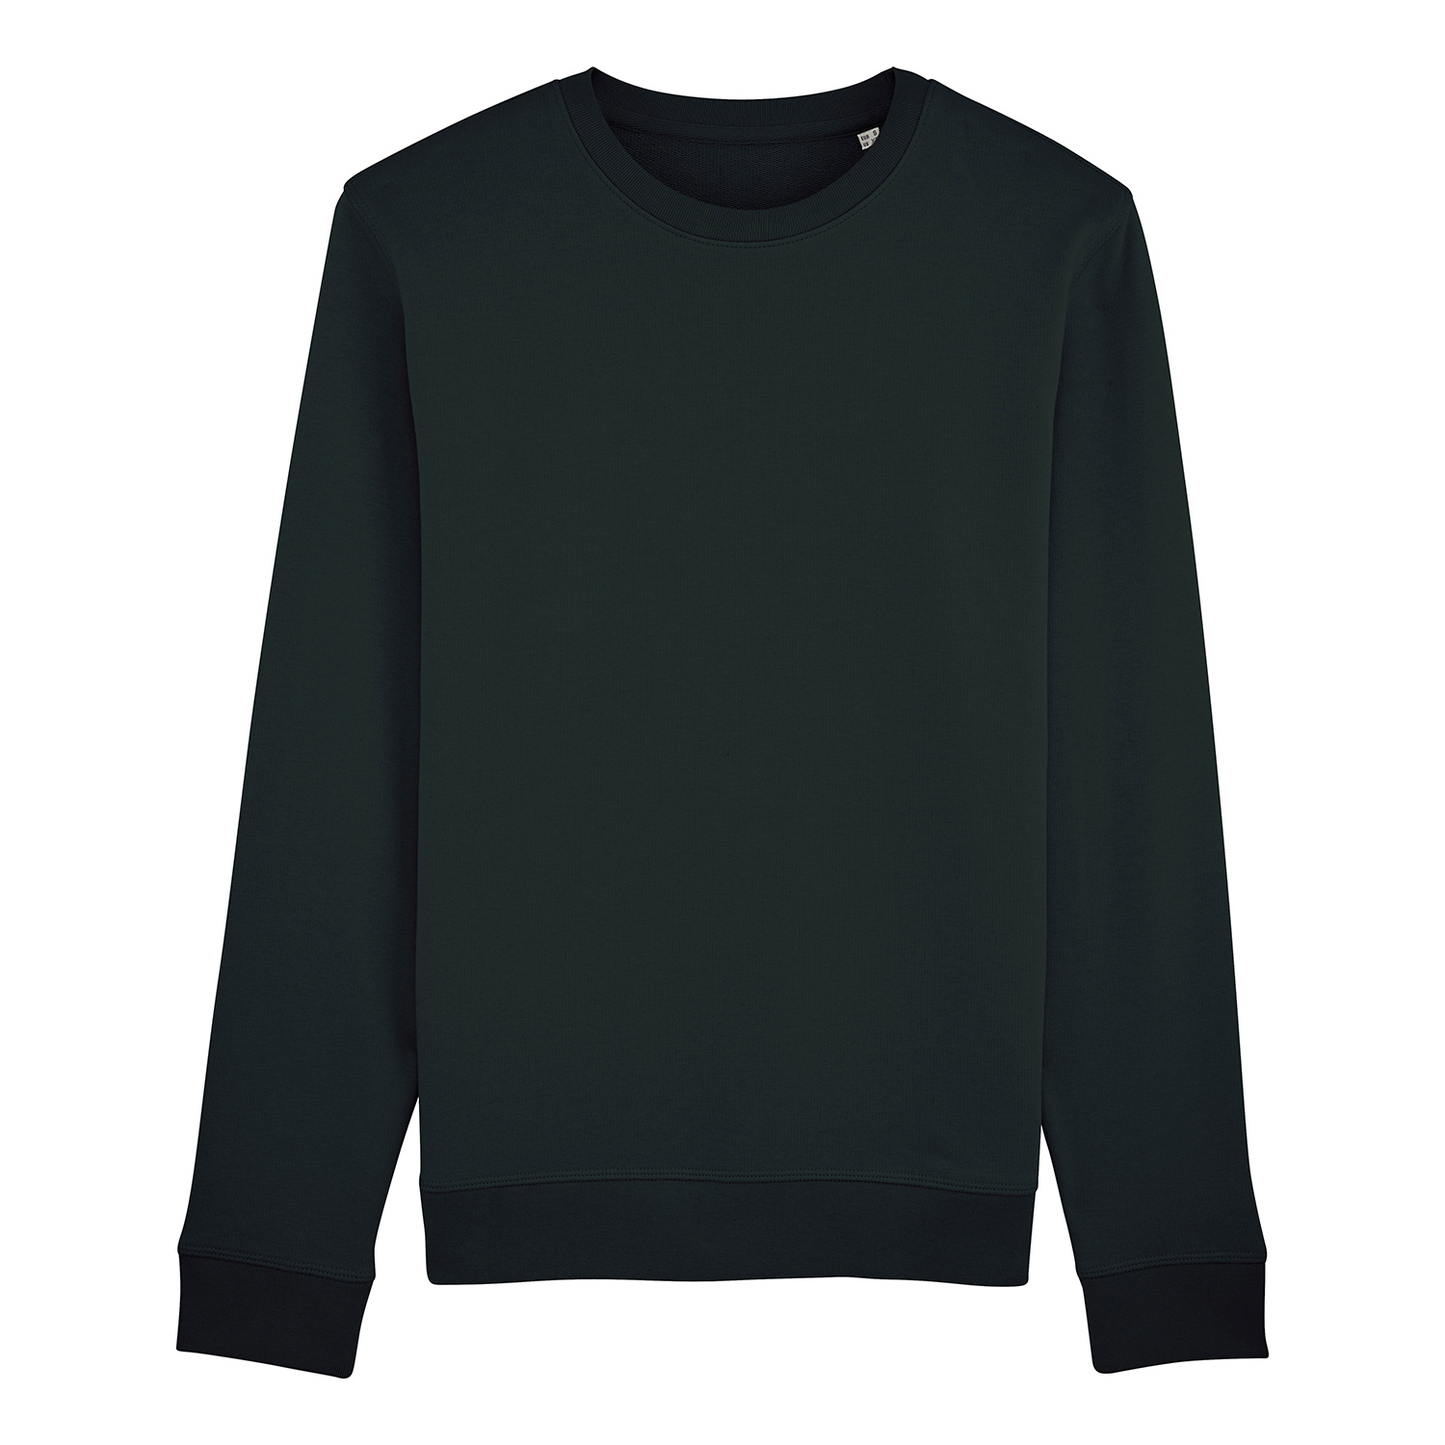 Sweater Astro, schwarz, weißer Backprint